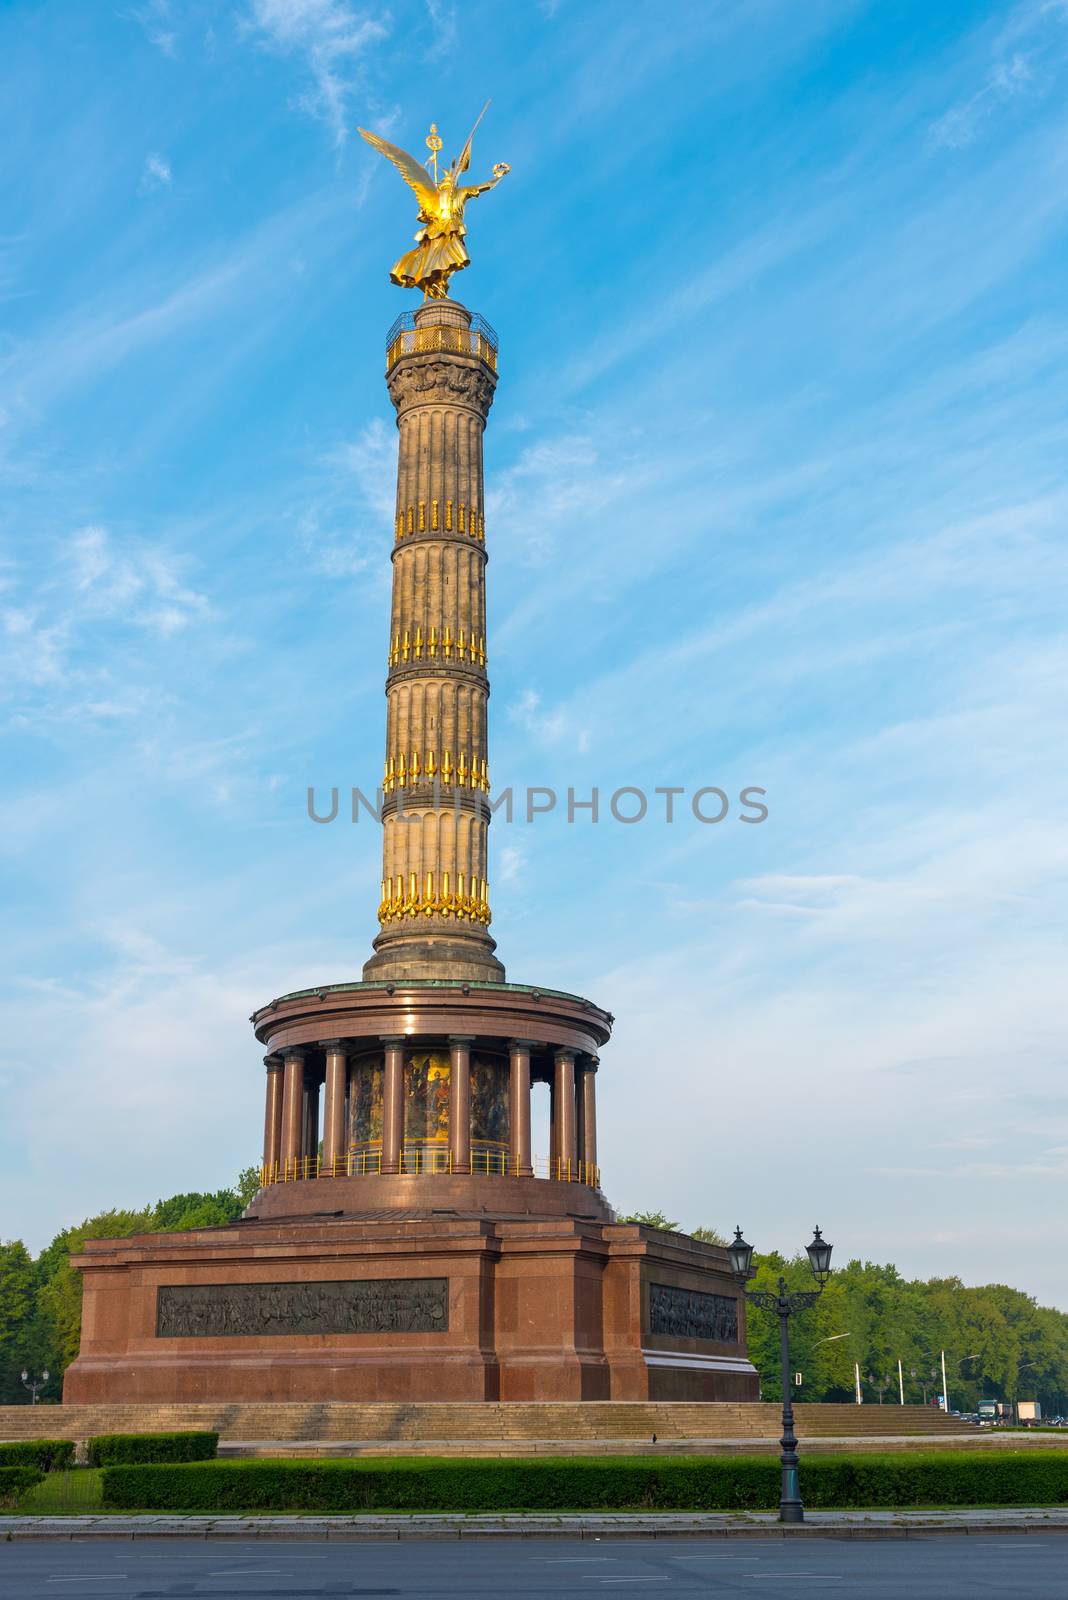 The Victory Column at the Tiergarten in Berlin